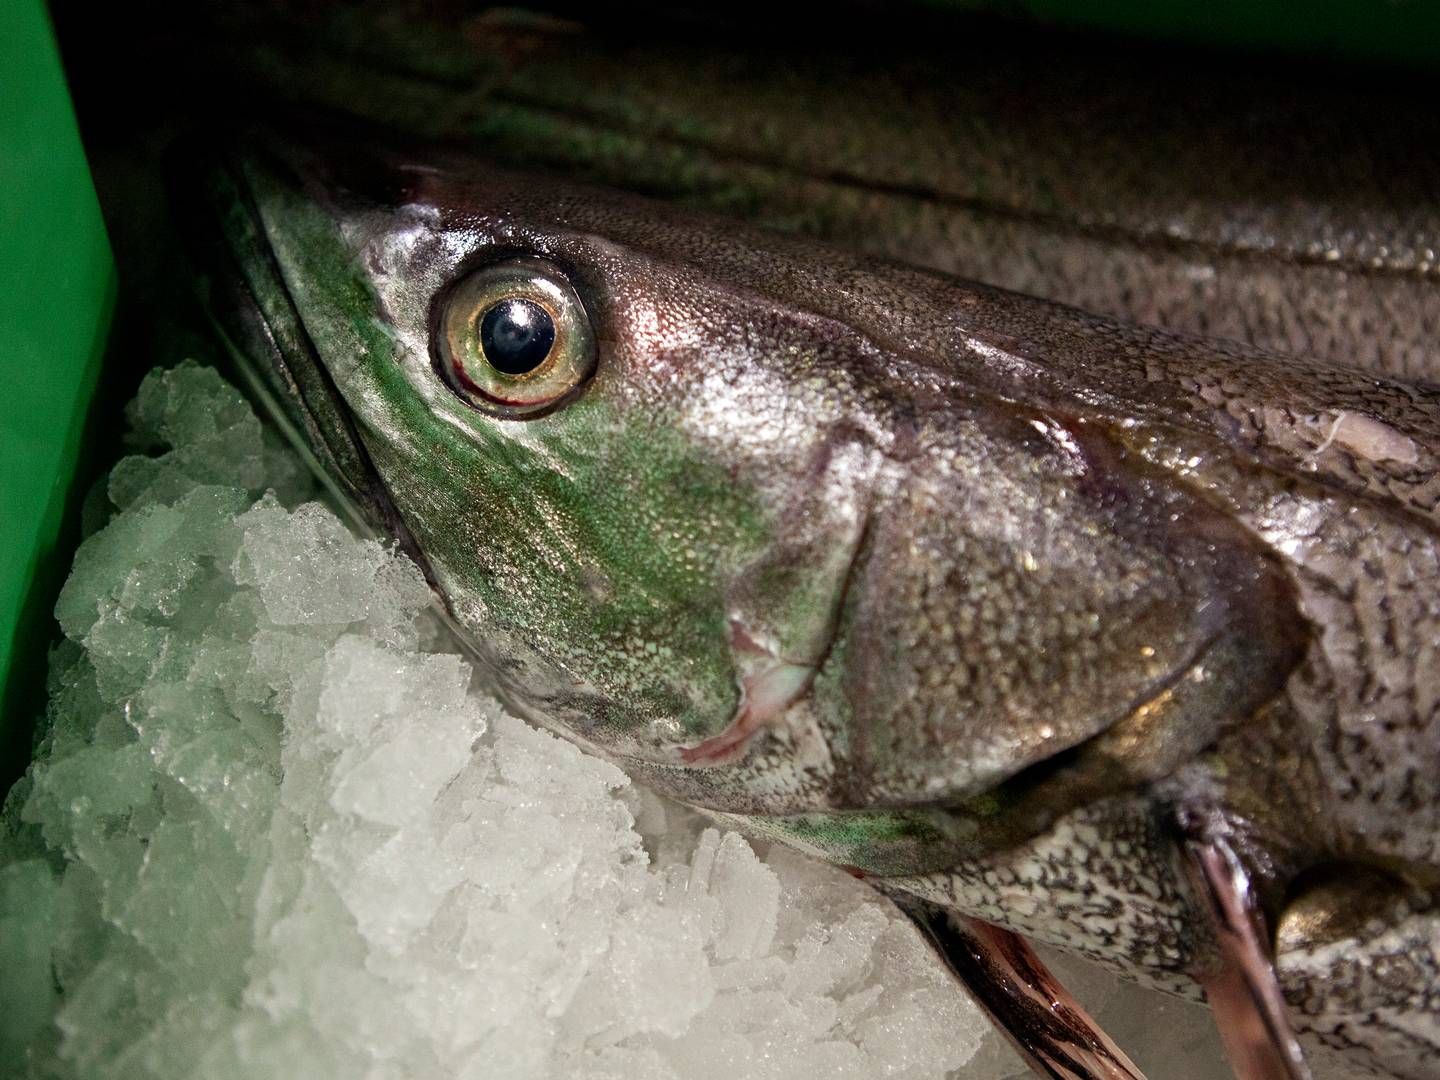 Salget af fisk er fortsat i højt tempo hos Hanstholm Fiskeauktion efter rekordåret 2022, men priserne er faldet i år, lyder meldingen. | Foto: Gorm Olesen/Jyllands-Posten/Ritzau Scanpix